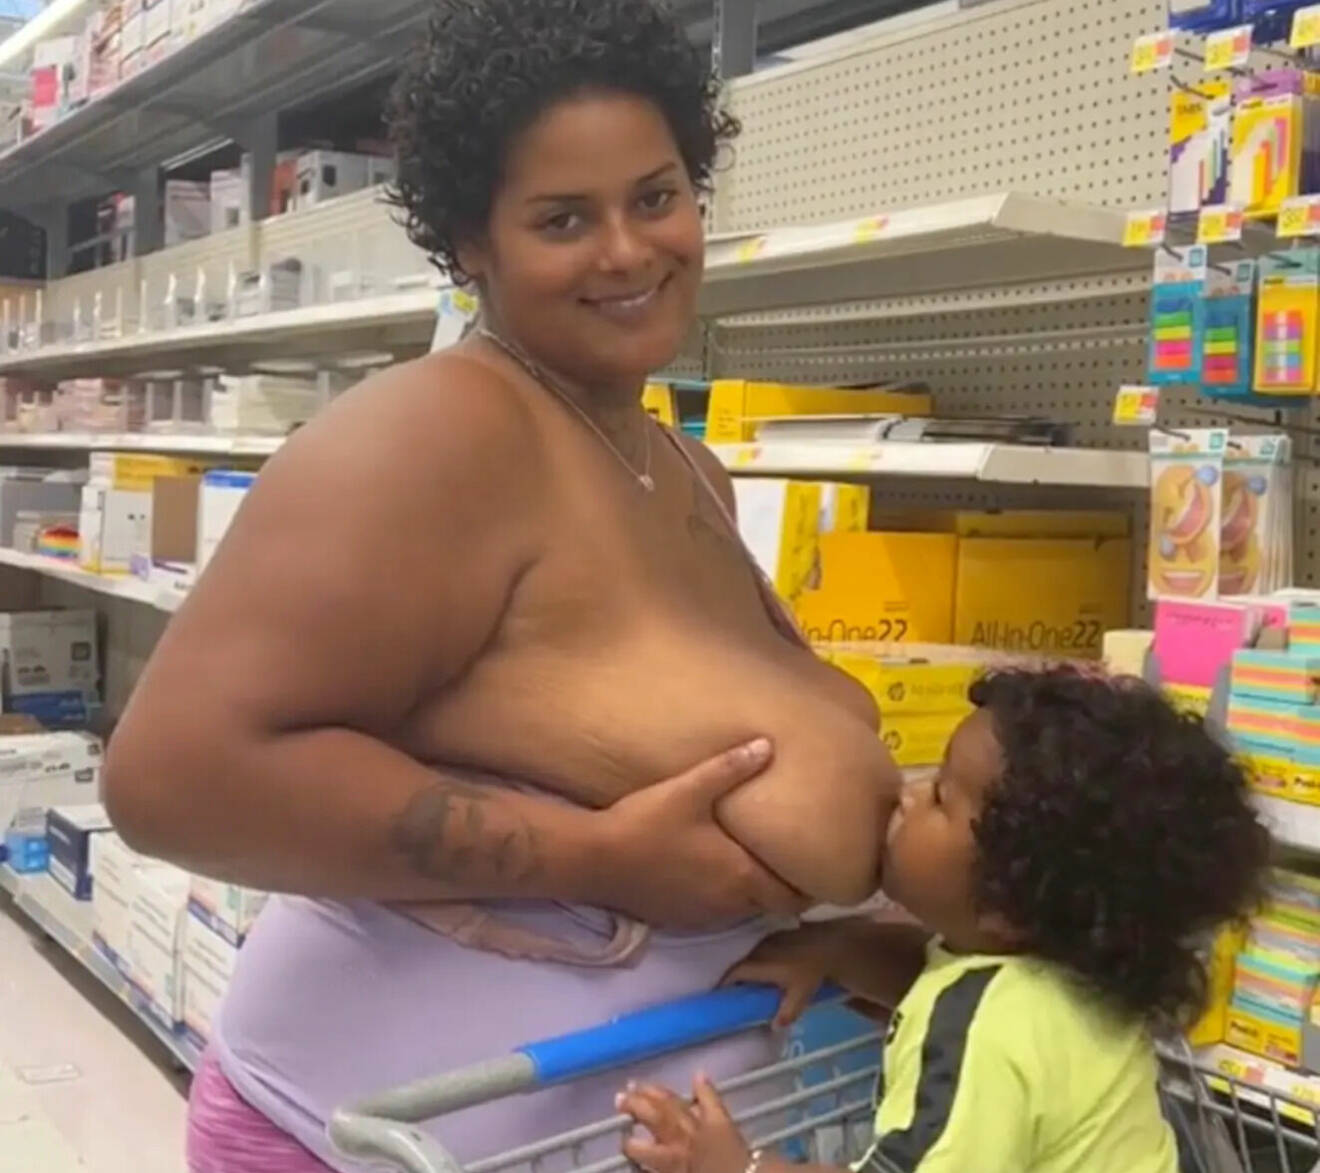 Mamman håller i sitt bröst och låter barnet som sitter i kundvagnen äta.